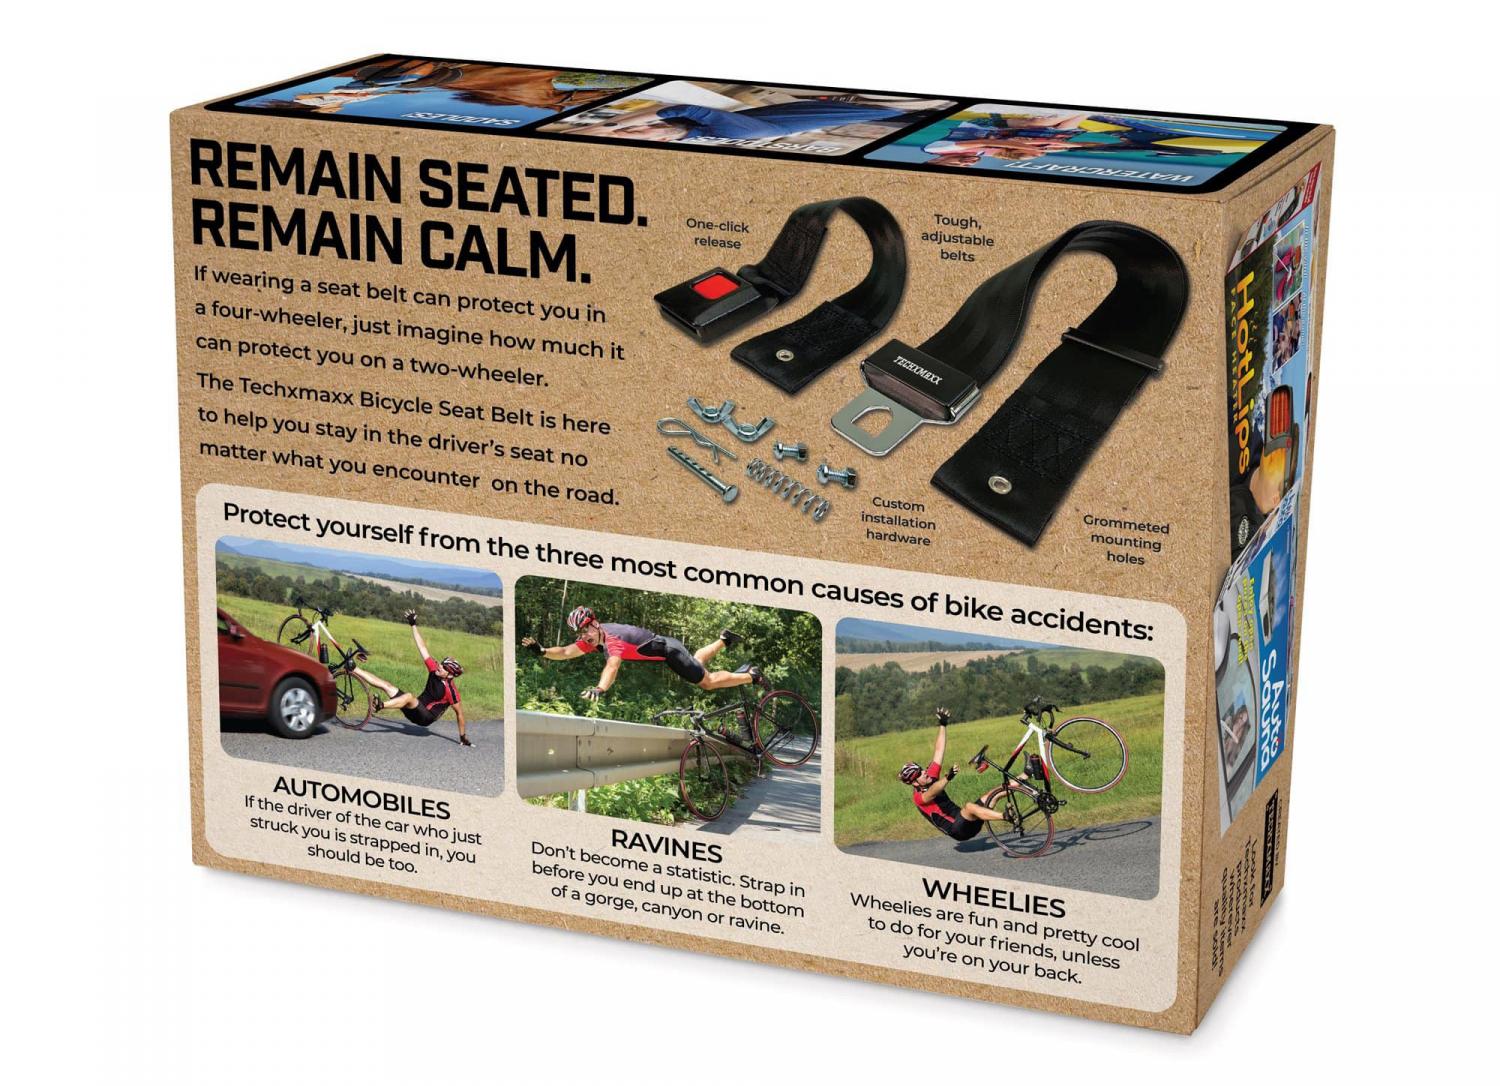 Bicycle Seat Belt Prank Box